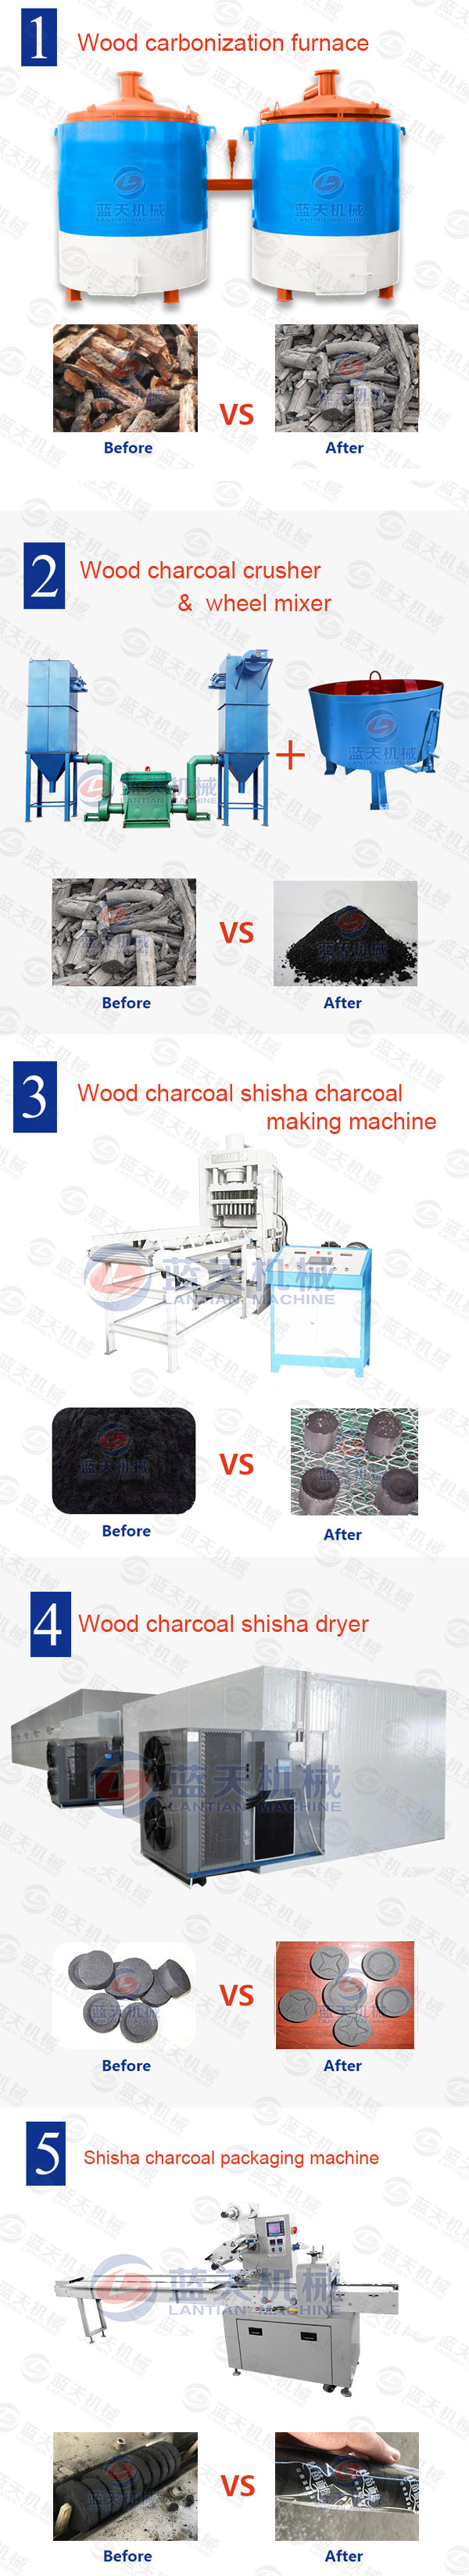 wood charcoal shisha charcoal equipment